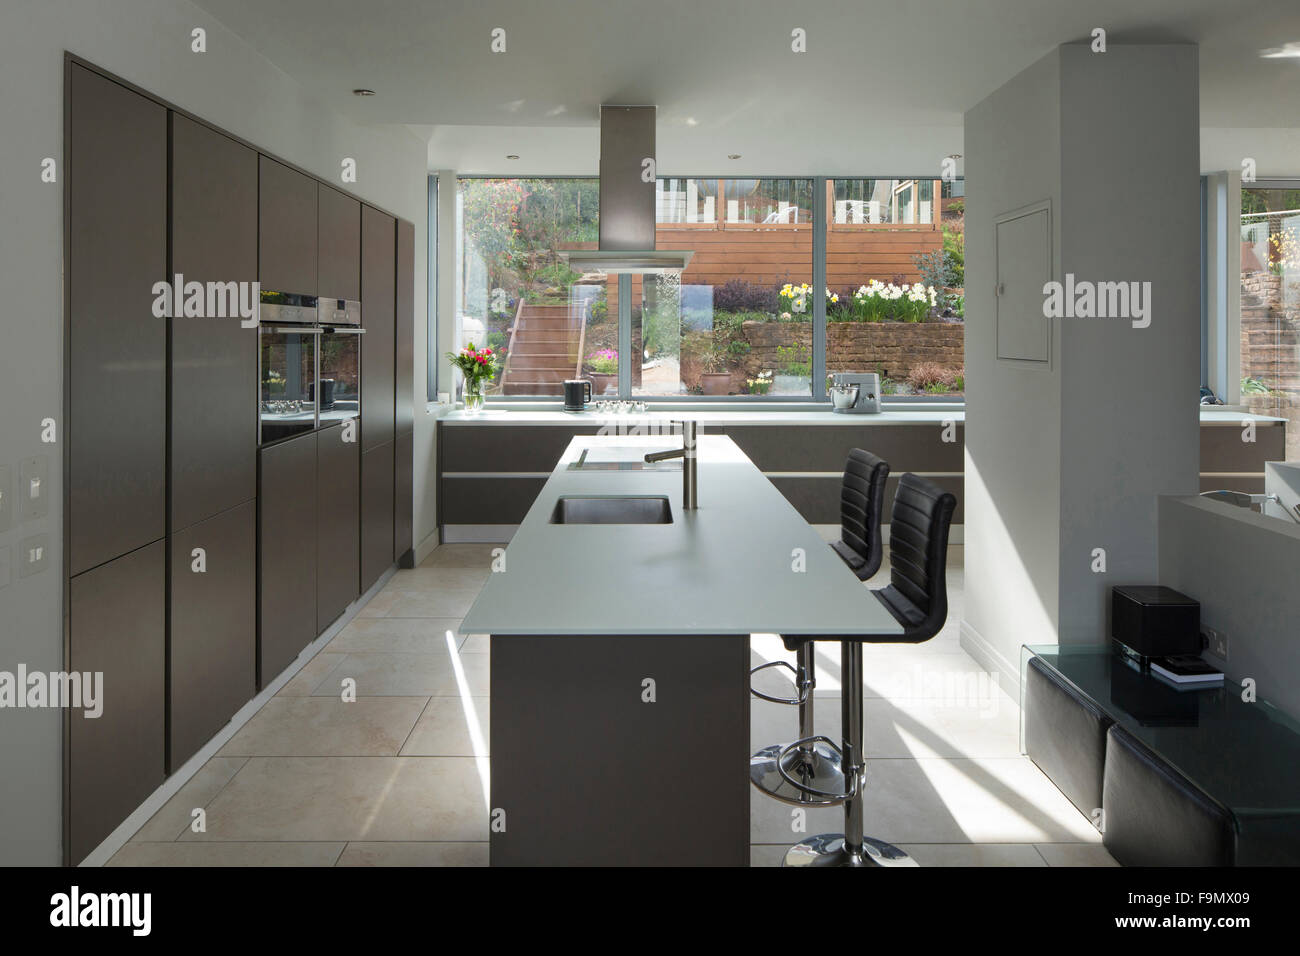 Einen großen offenen Raum, Küche und Essbereich, mit Ansichten aus dem vollen Größe Glas Wandpaneele auf einen Patio. Minimalistische, klare Linien und schlichte Wände. Stockfoto